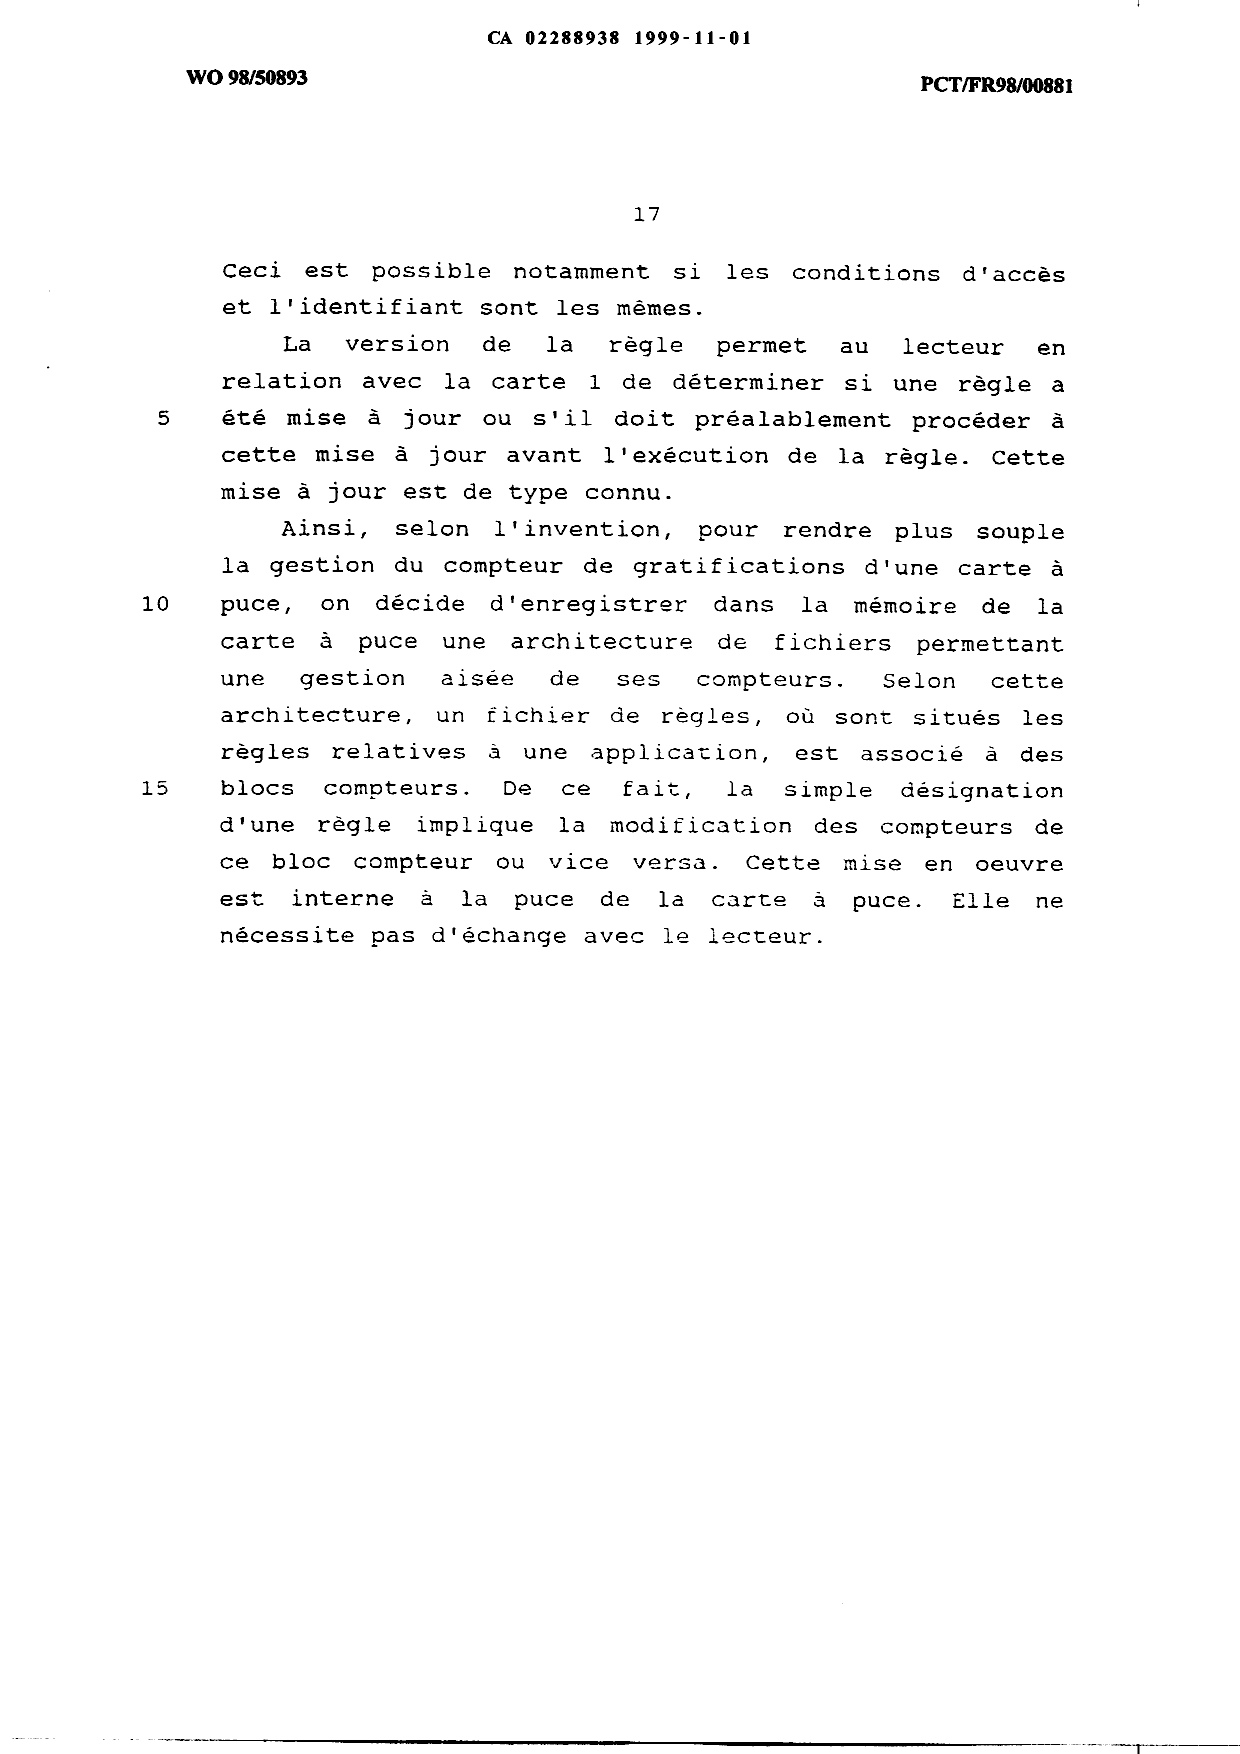 Canadian Patent Document 2288938. Description 19991101. Image 17 of 17